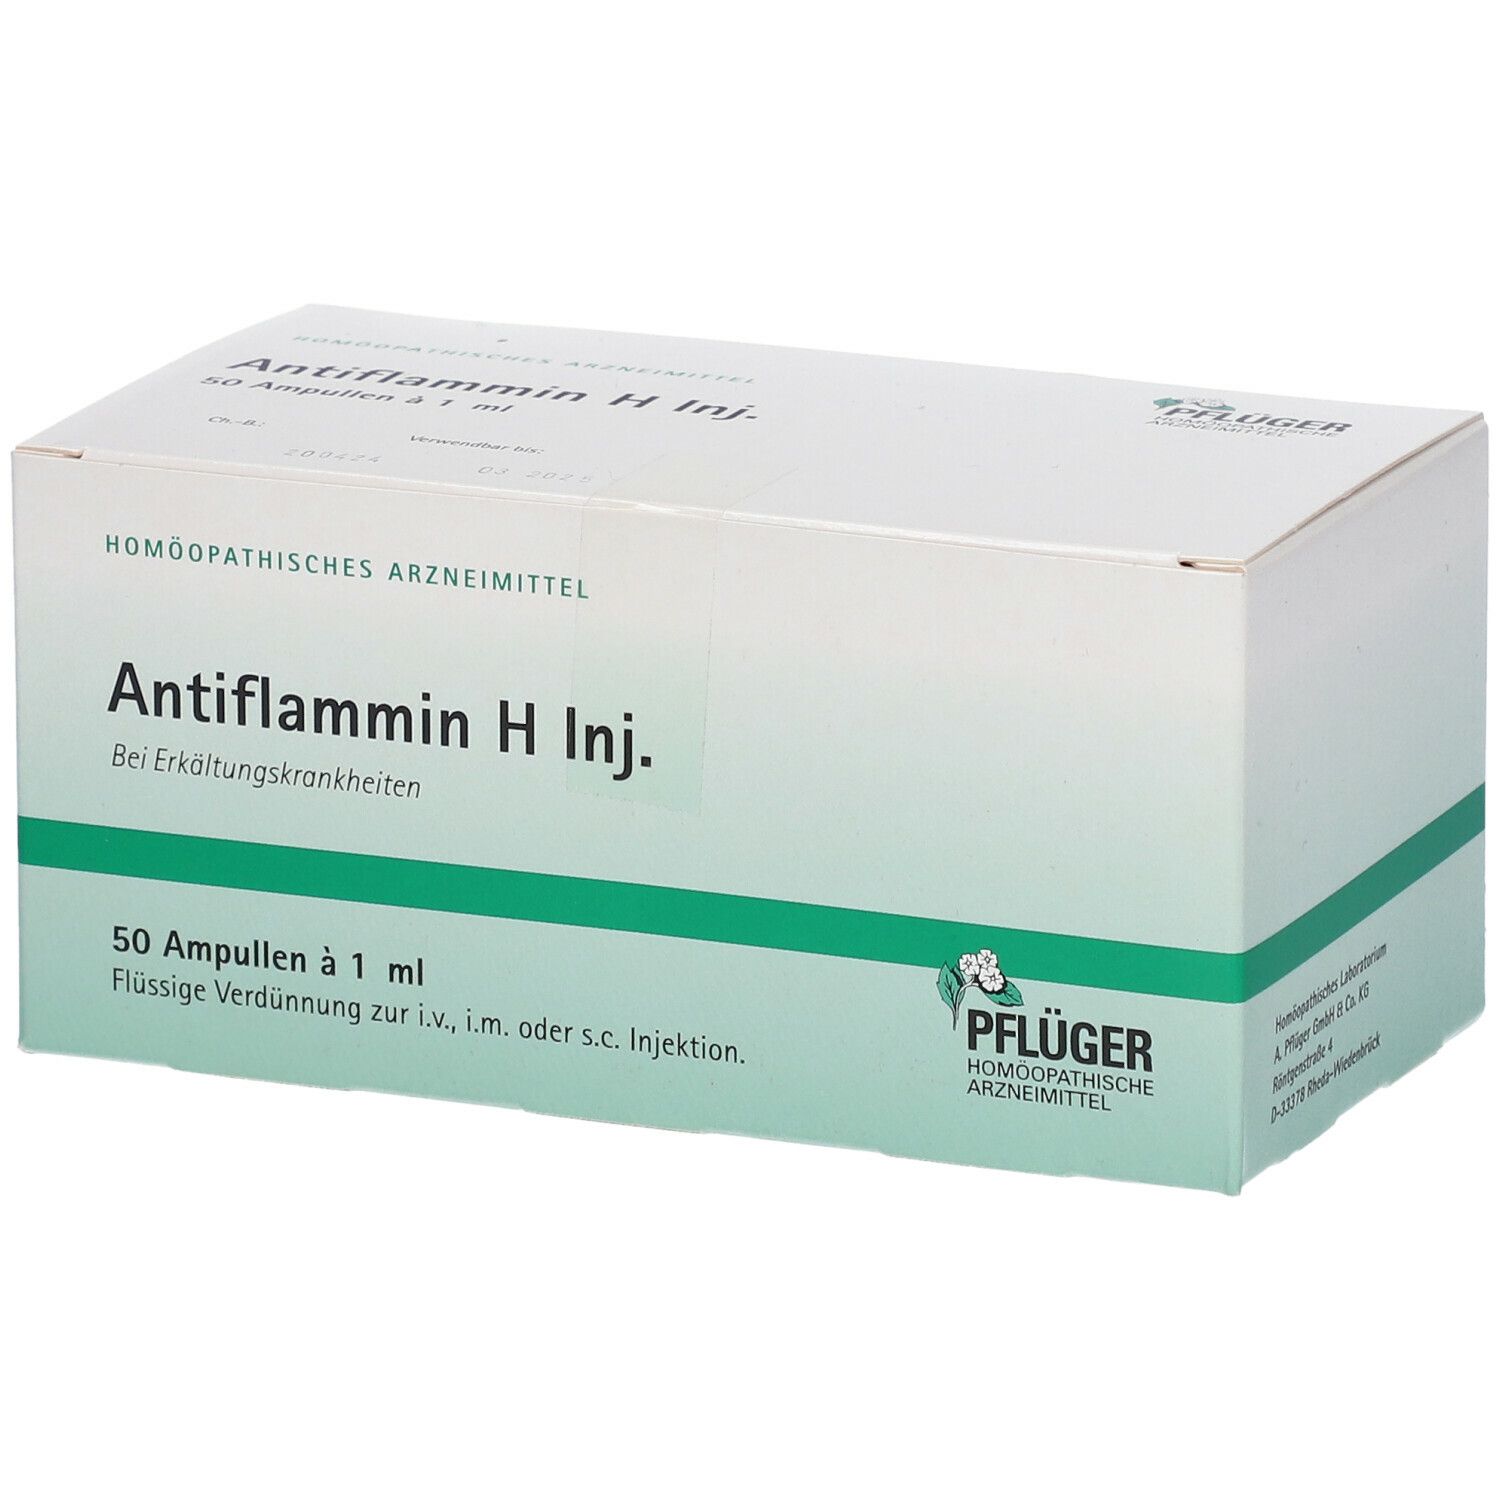 Antiflammin H Inj.